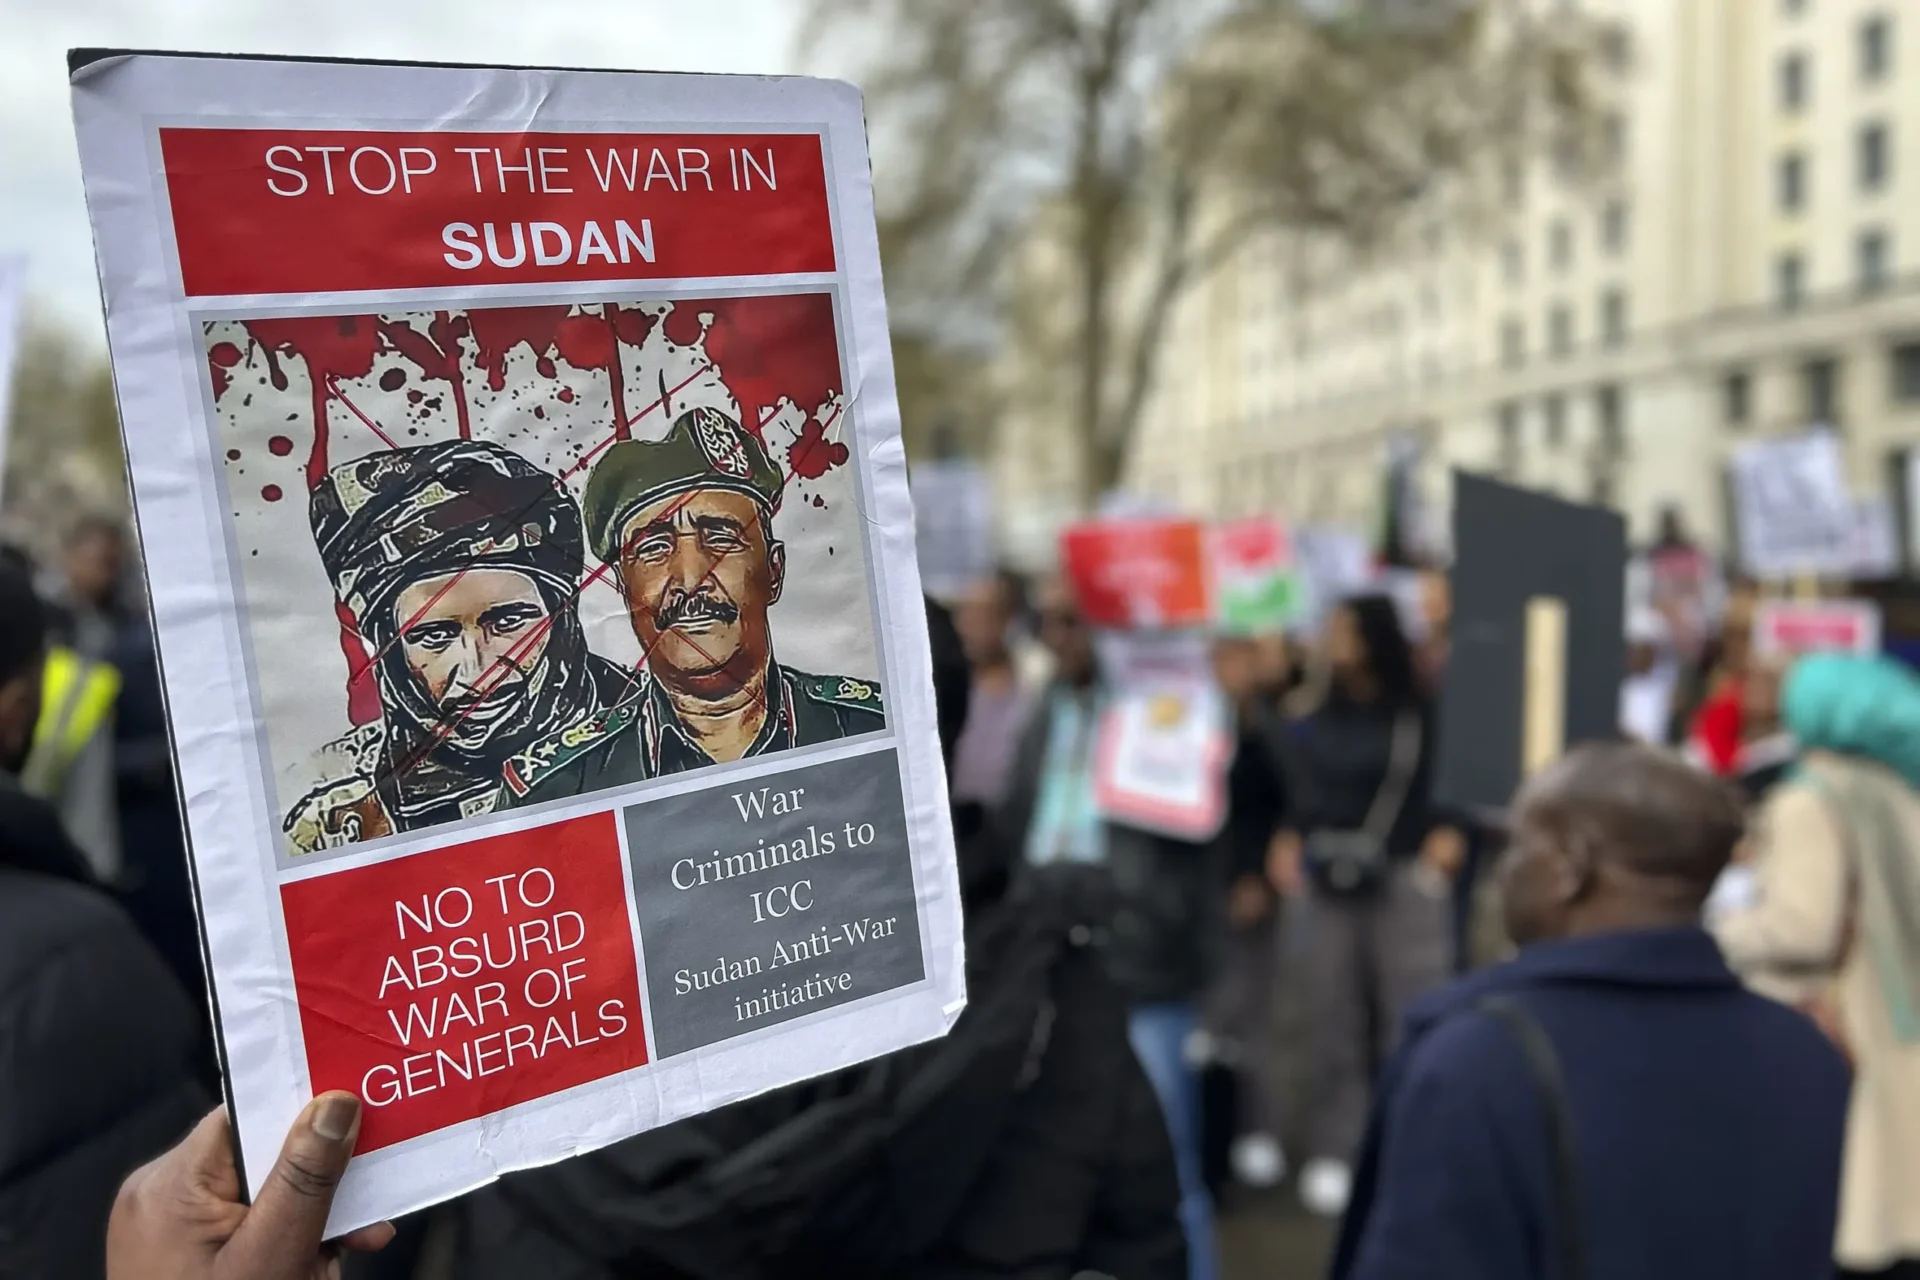 Los sudaneses en el extranjero intentan extender un salvavidas y ayudar en casa